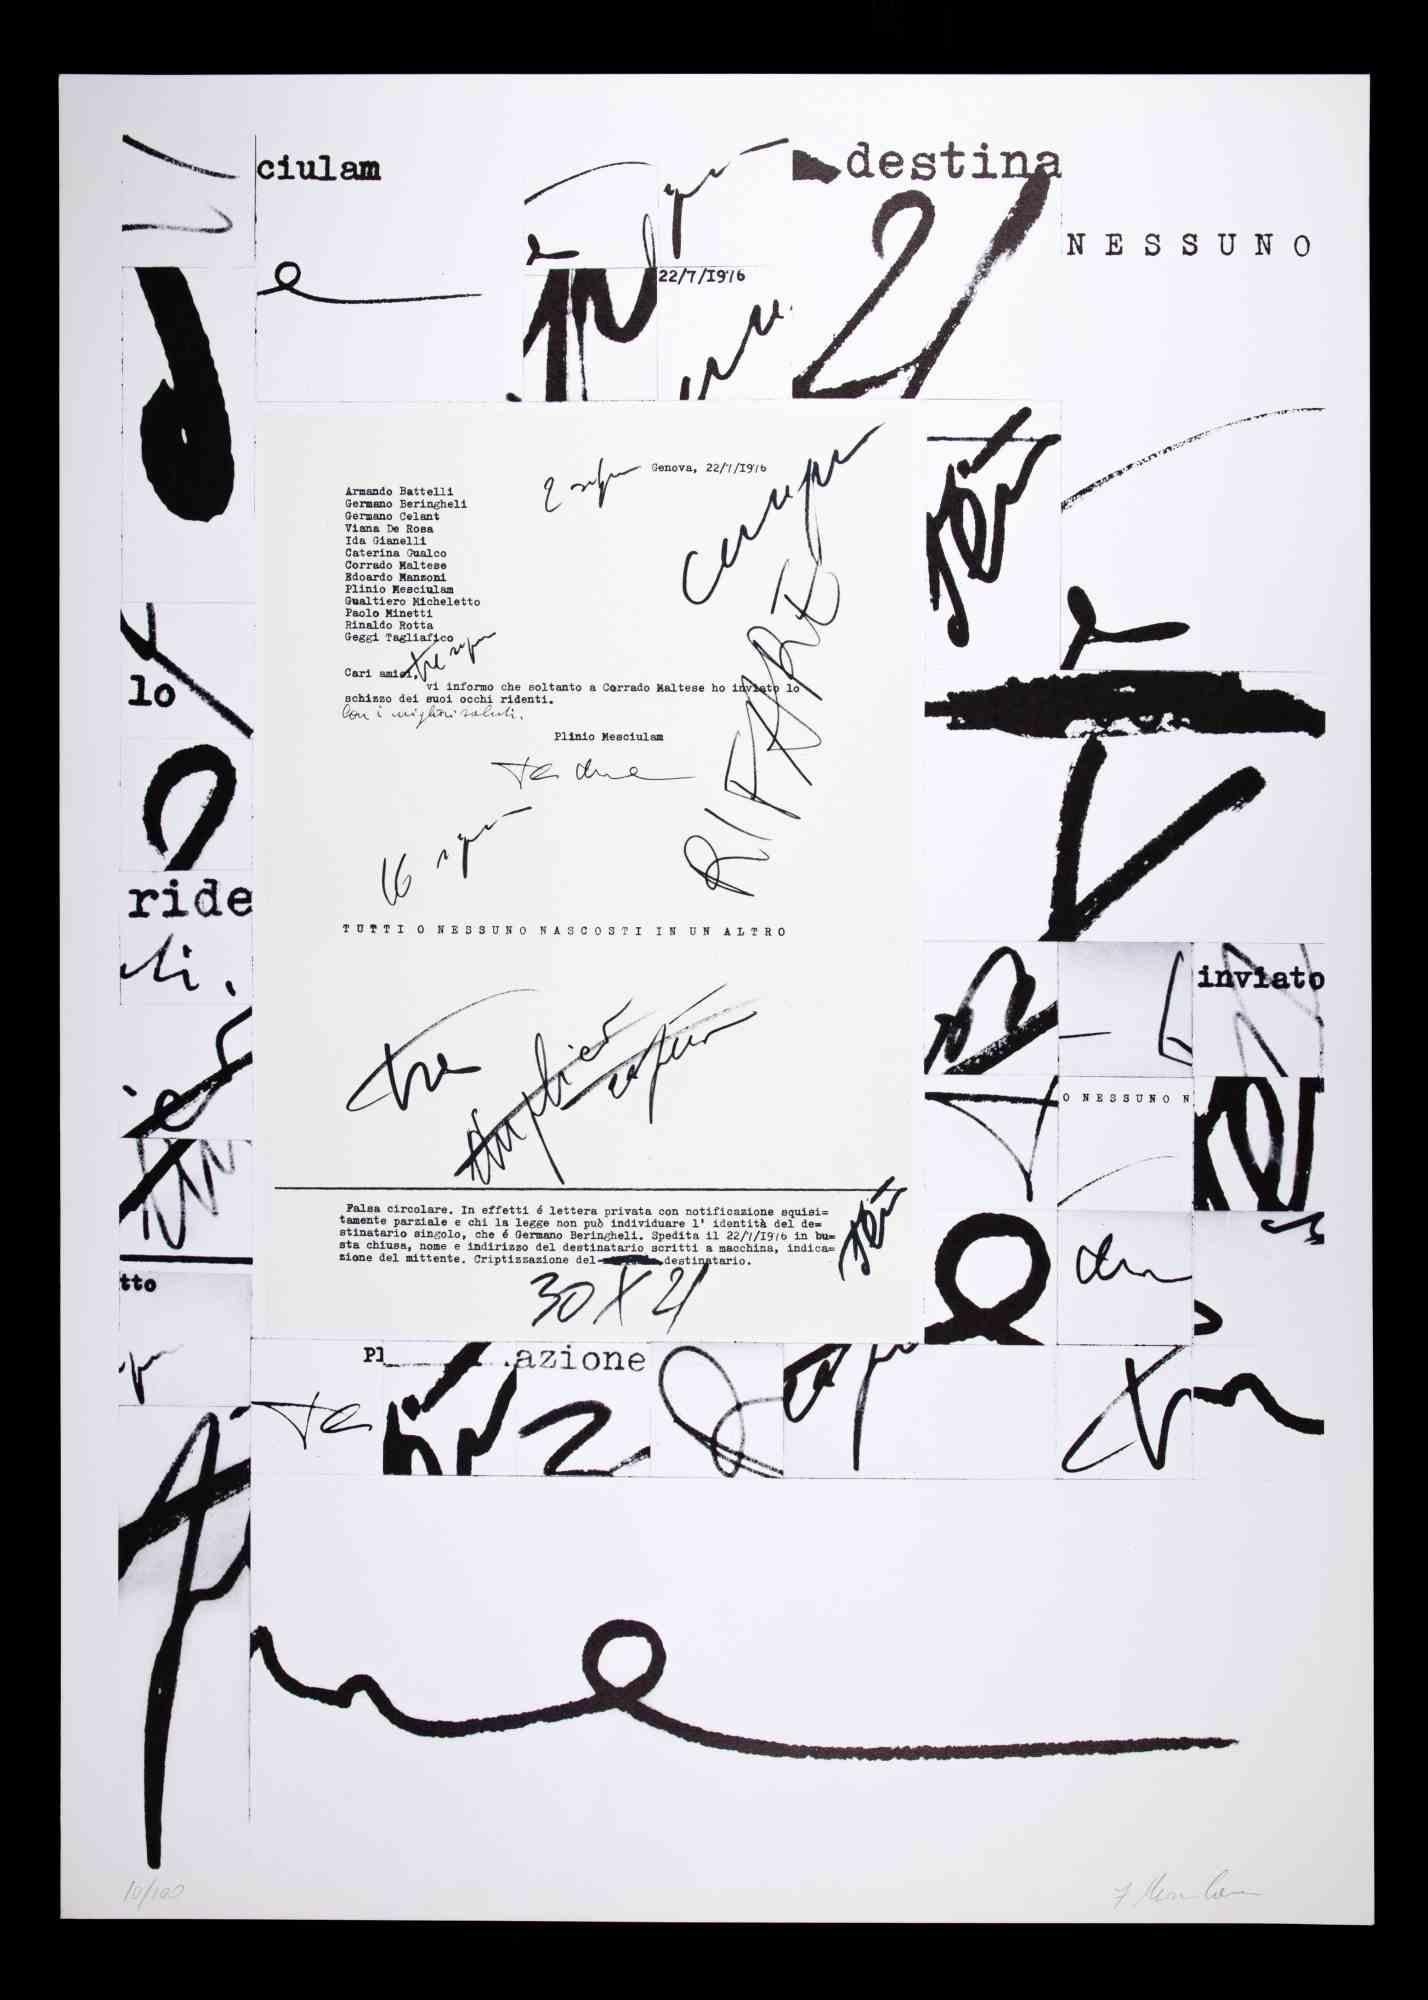 Composition abstraite est une lithographie originale réalisée par Plinio Mesciulam en 1973.

Très bon état sur un carton blanc.

Signé et numéroté par l'artiste dans la marge inférieure.

Plinio Mesciulam (23 décembre 1926 - 19 mai 2021) était un